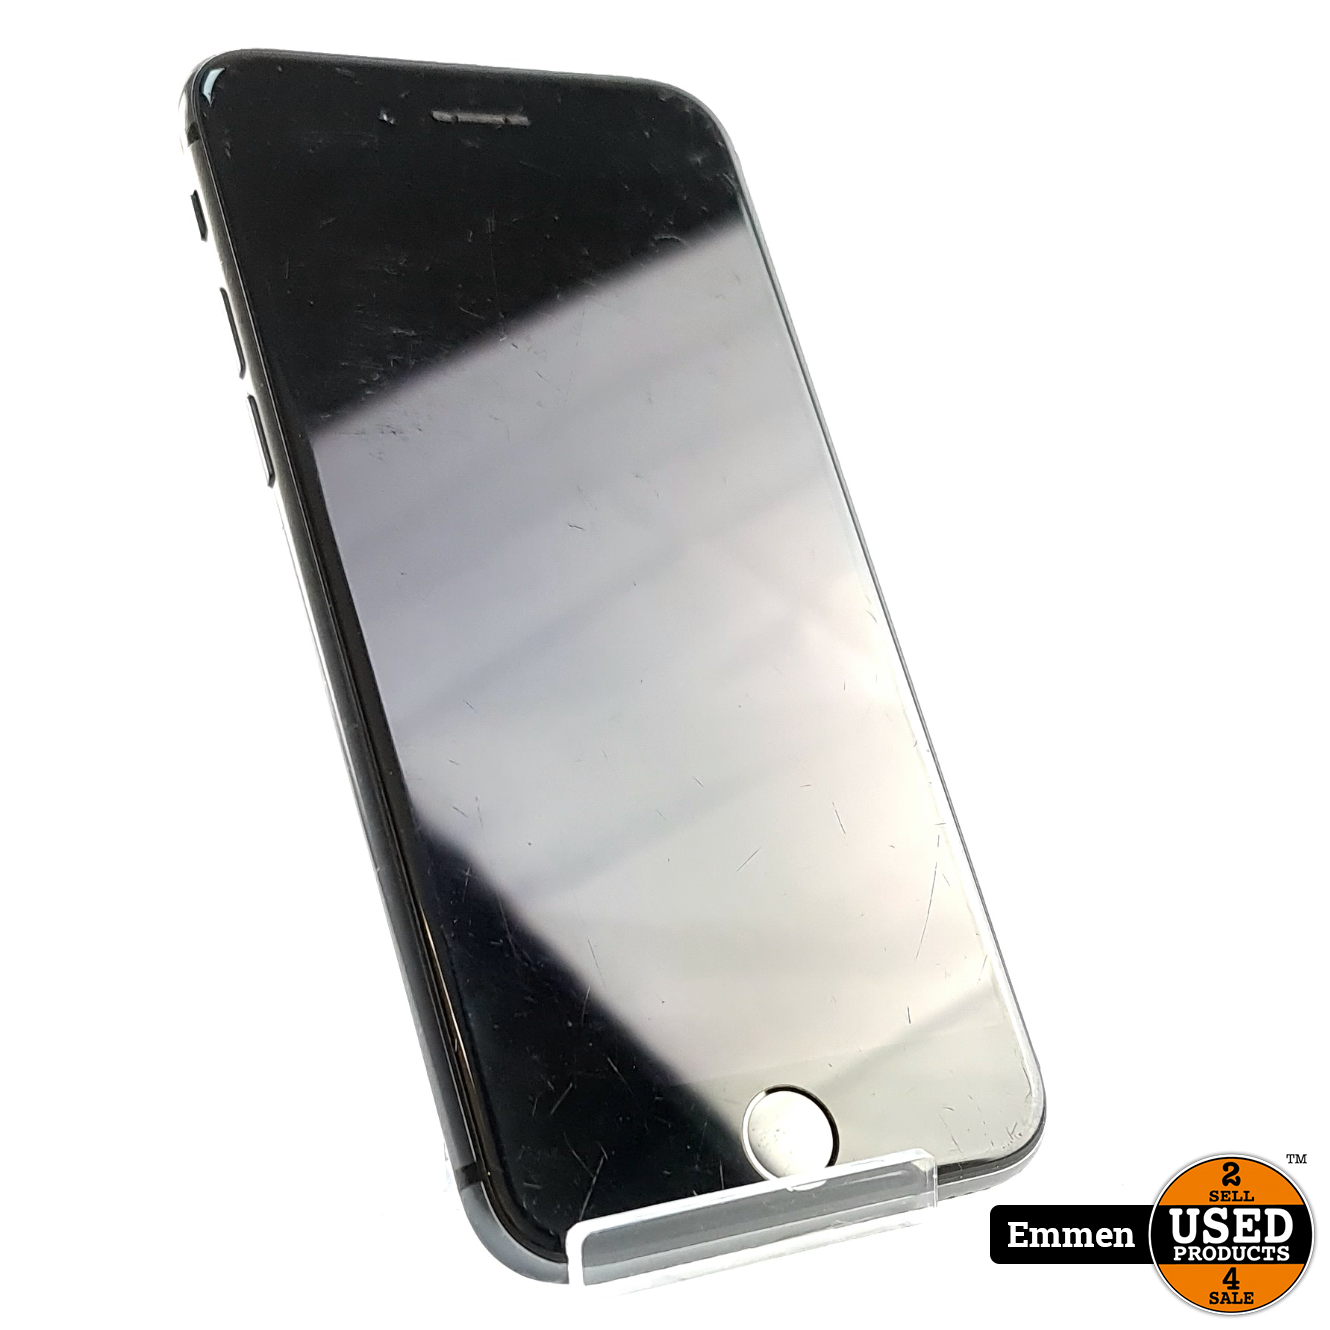 emulsie Marine Touhou Apple iPhone 8 64GB Black/Zwart | Incl. Garantie - Used Products Emmen